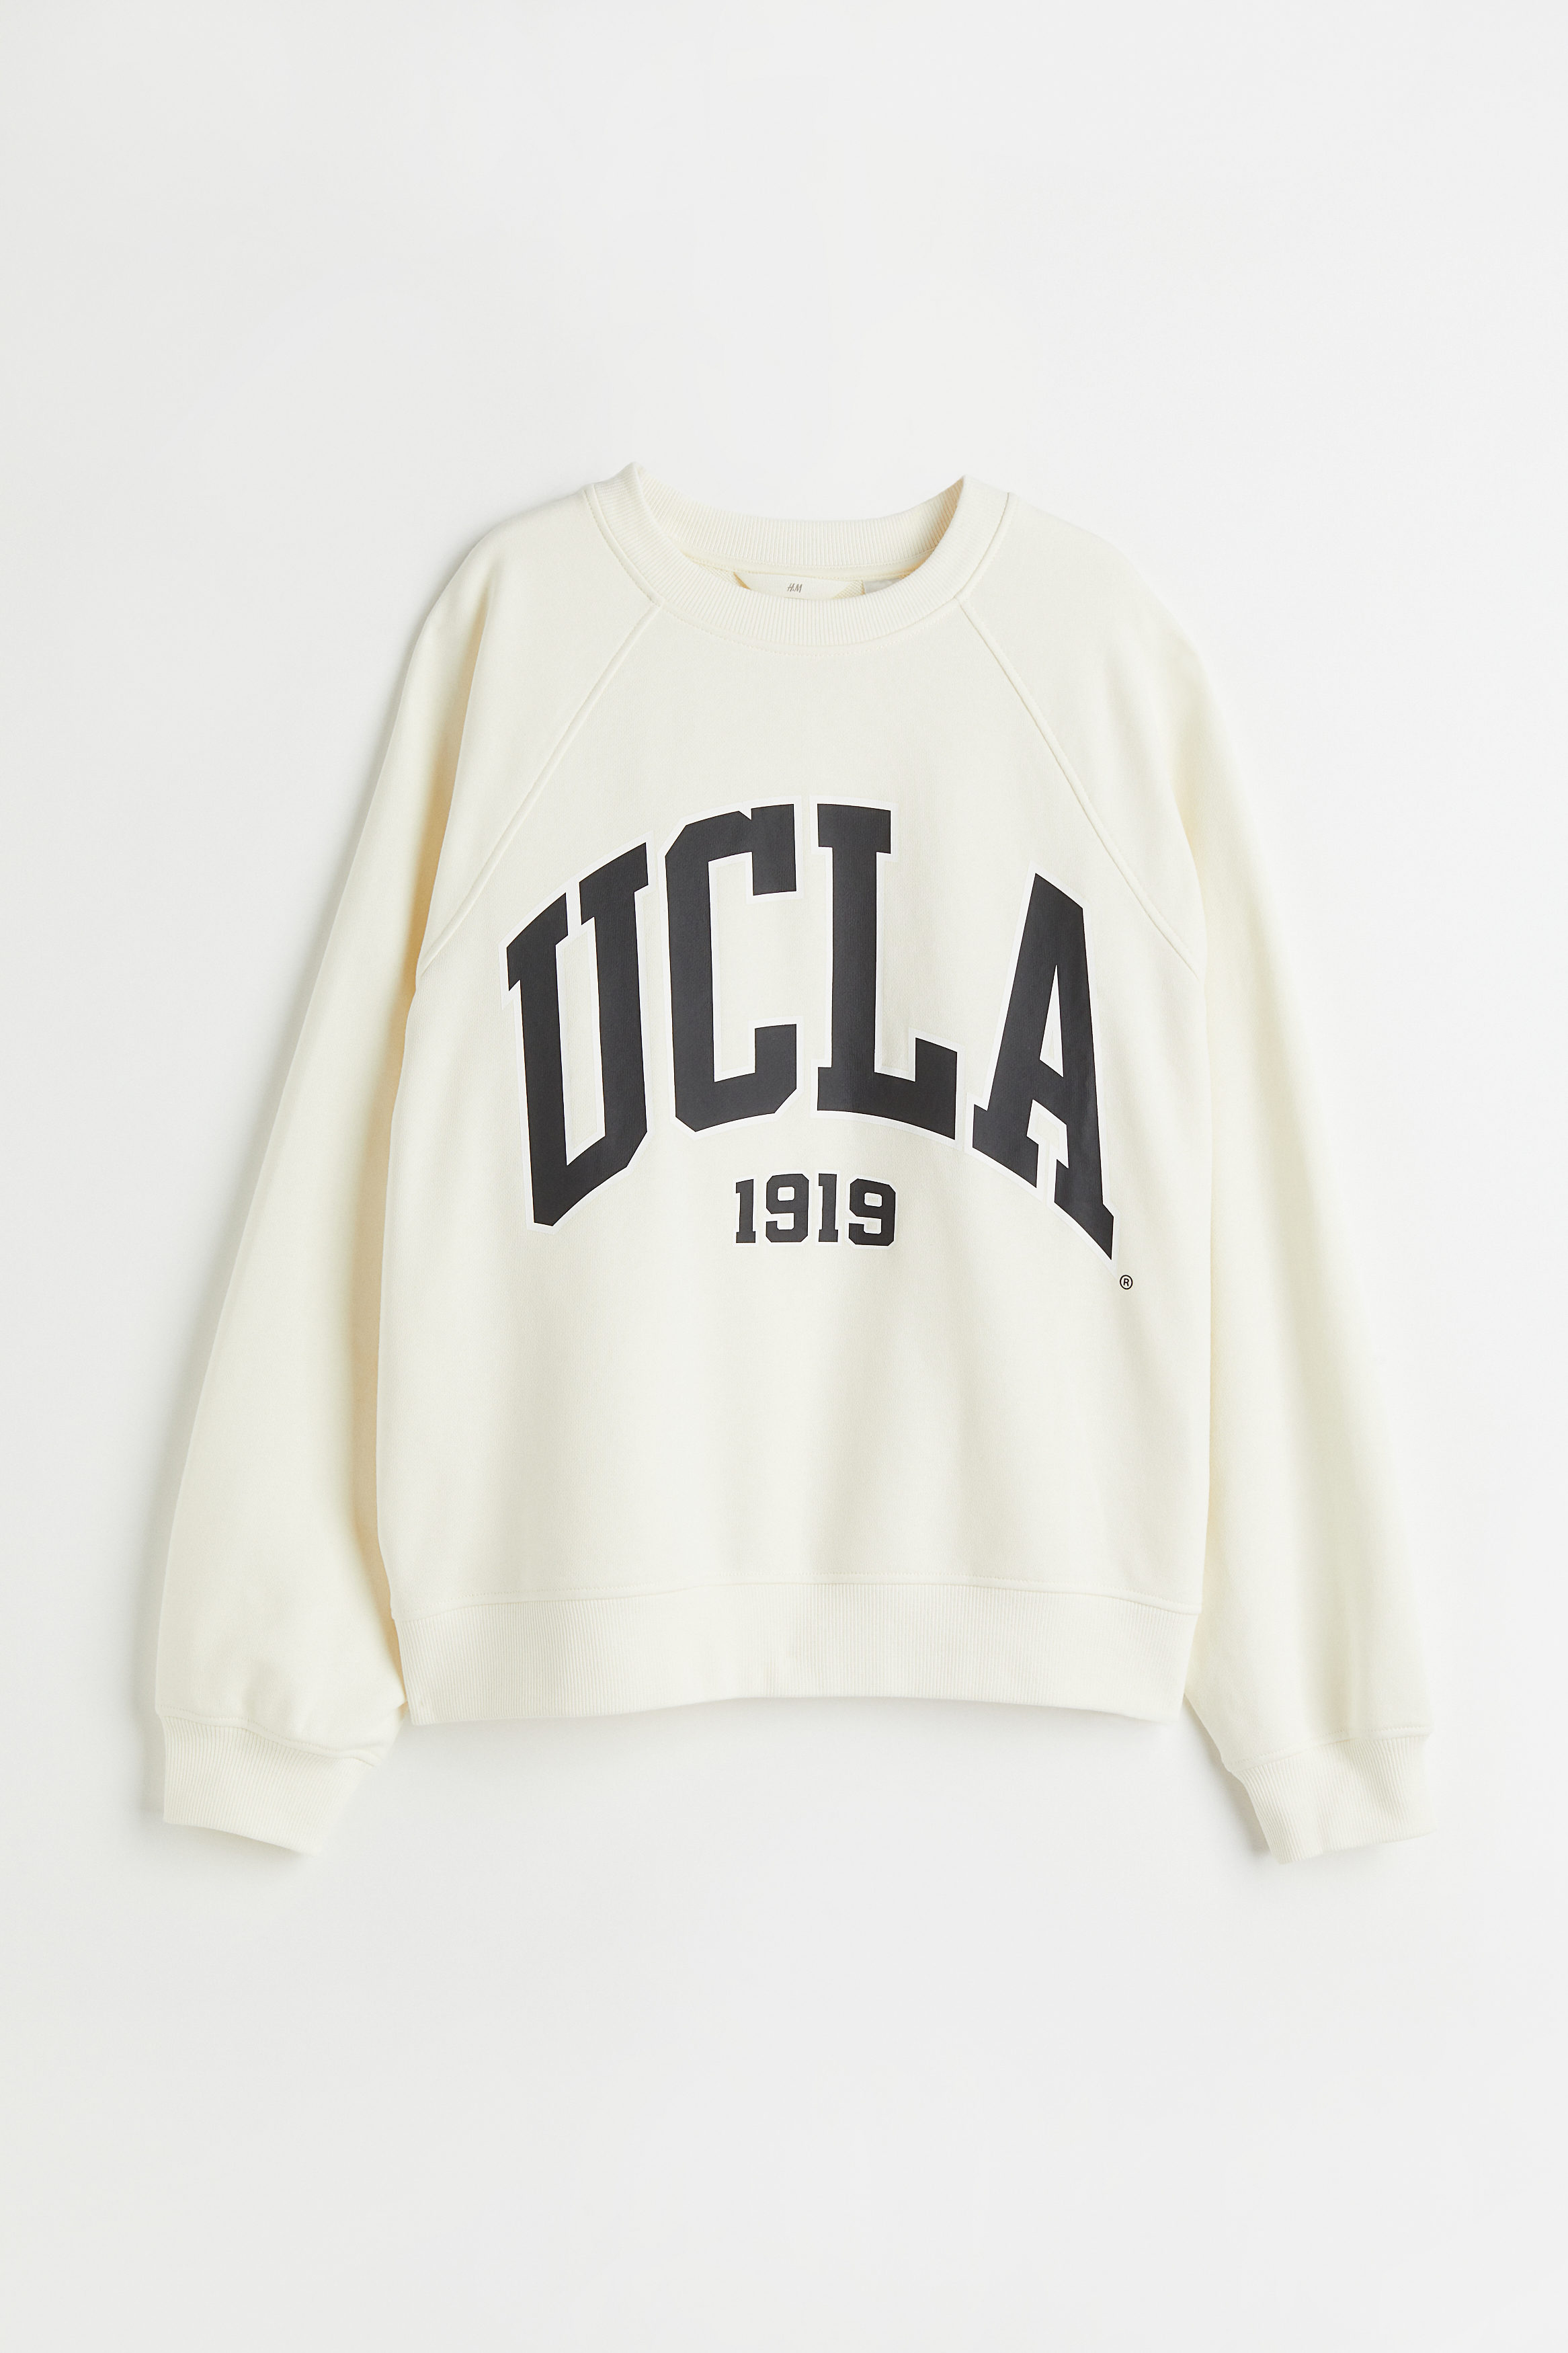 Billede af H&M Sweatshirt Med Motiv Creme/ucla, Hoodies & Sweatshirts. Farve: Cream/ucla I størrelse XXL